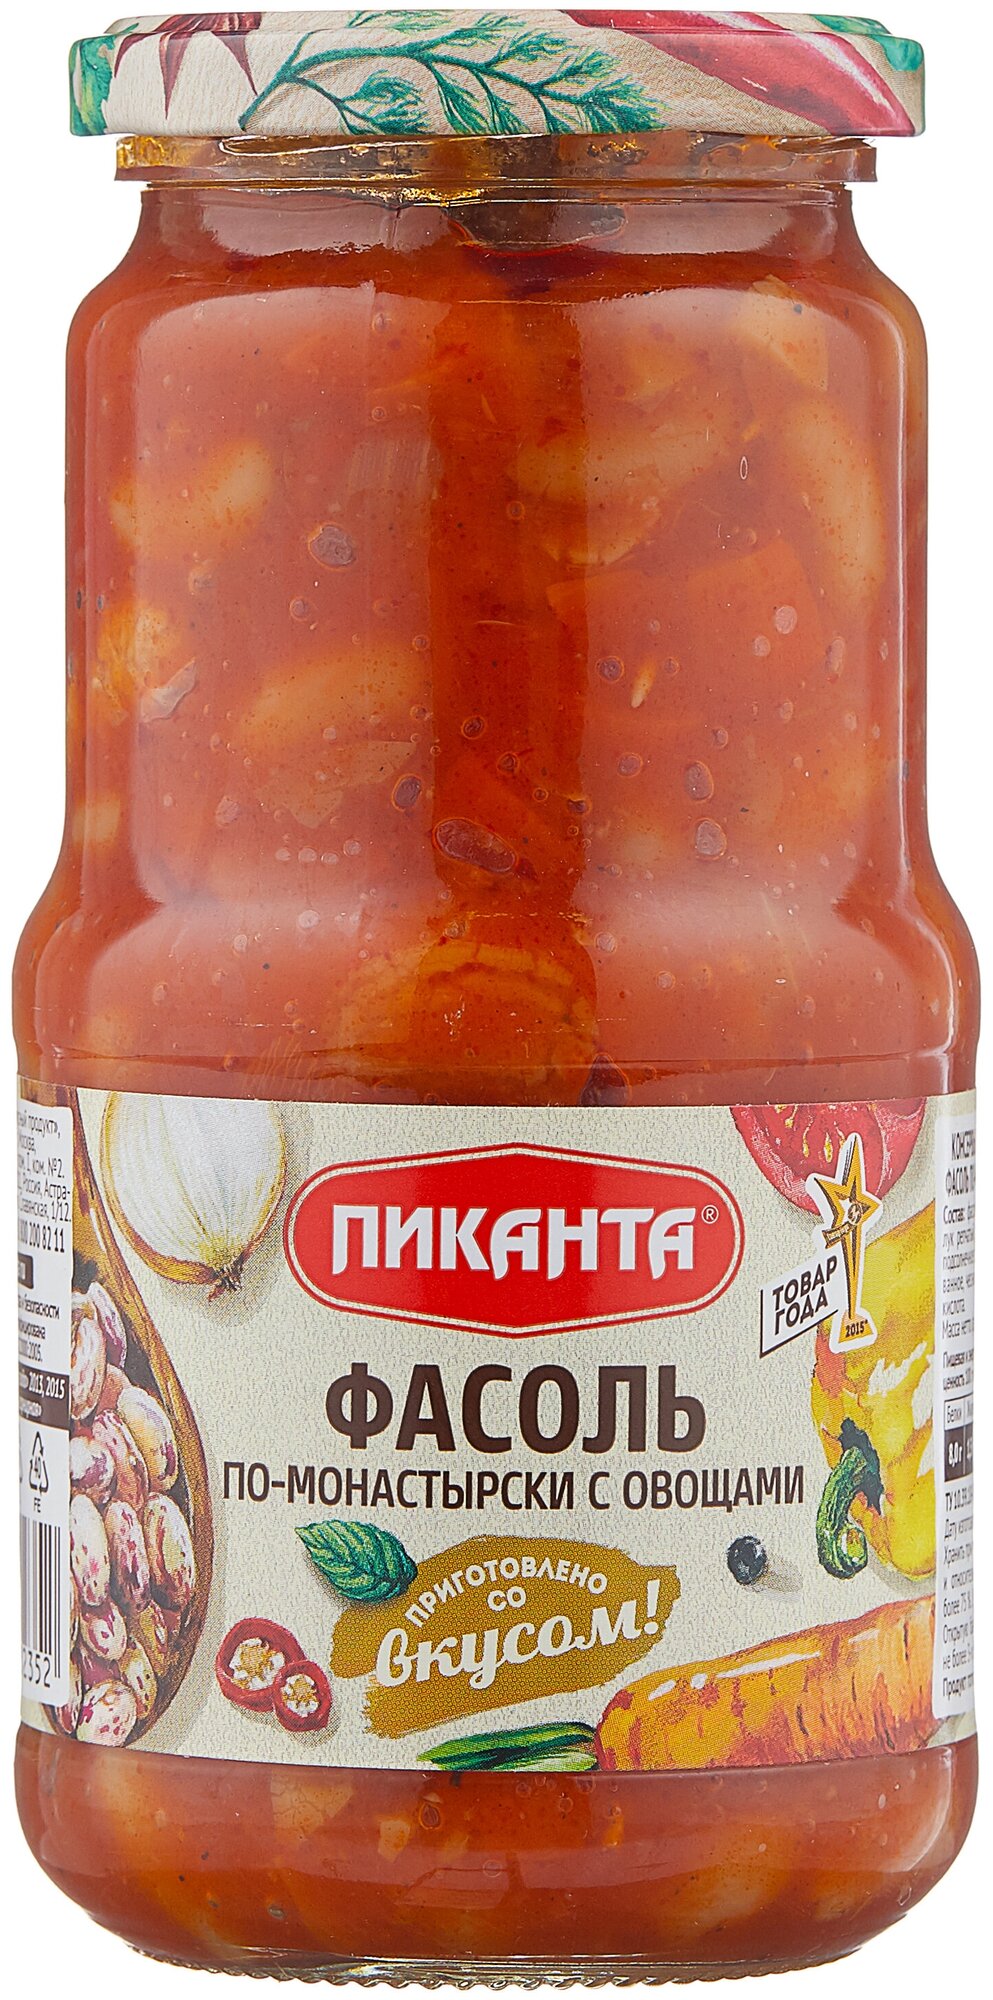 Фасоль Пиканта по-монастырски с овощами, стеклянная банка, 530 г — купить по выгодной цене на Яндекс.Маркете